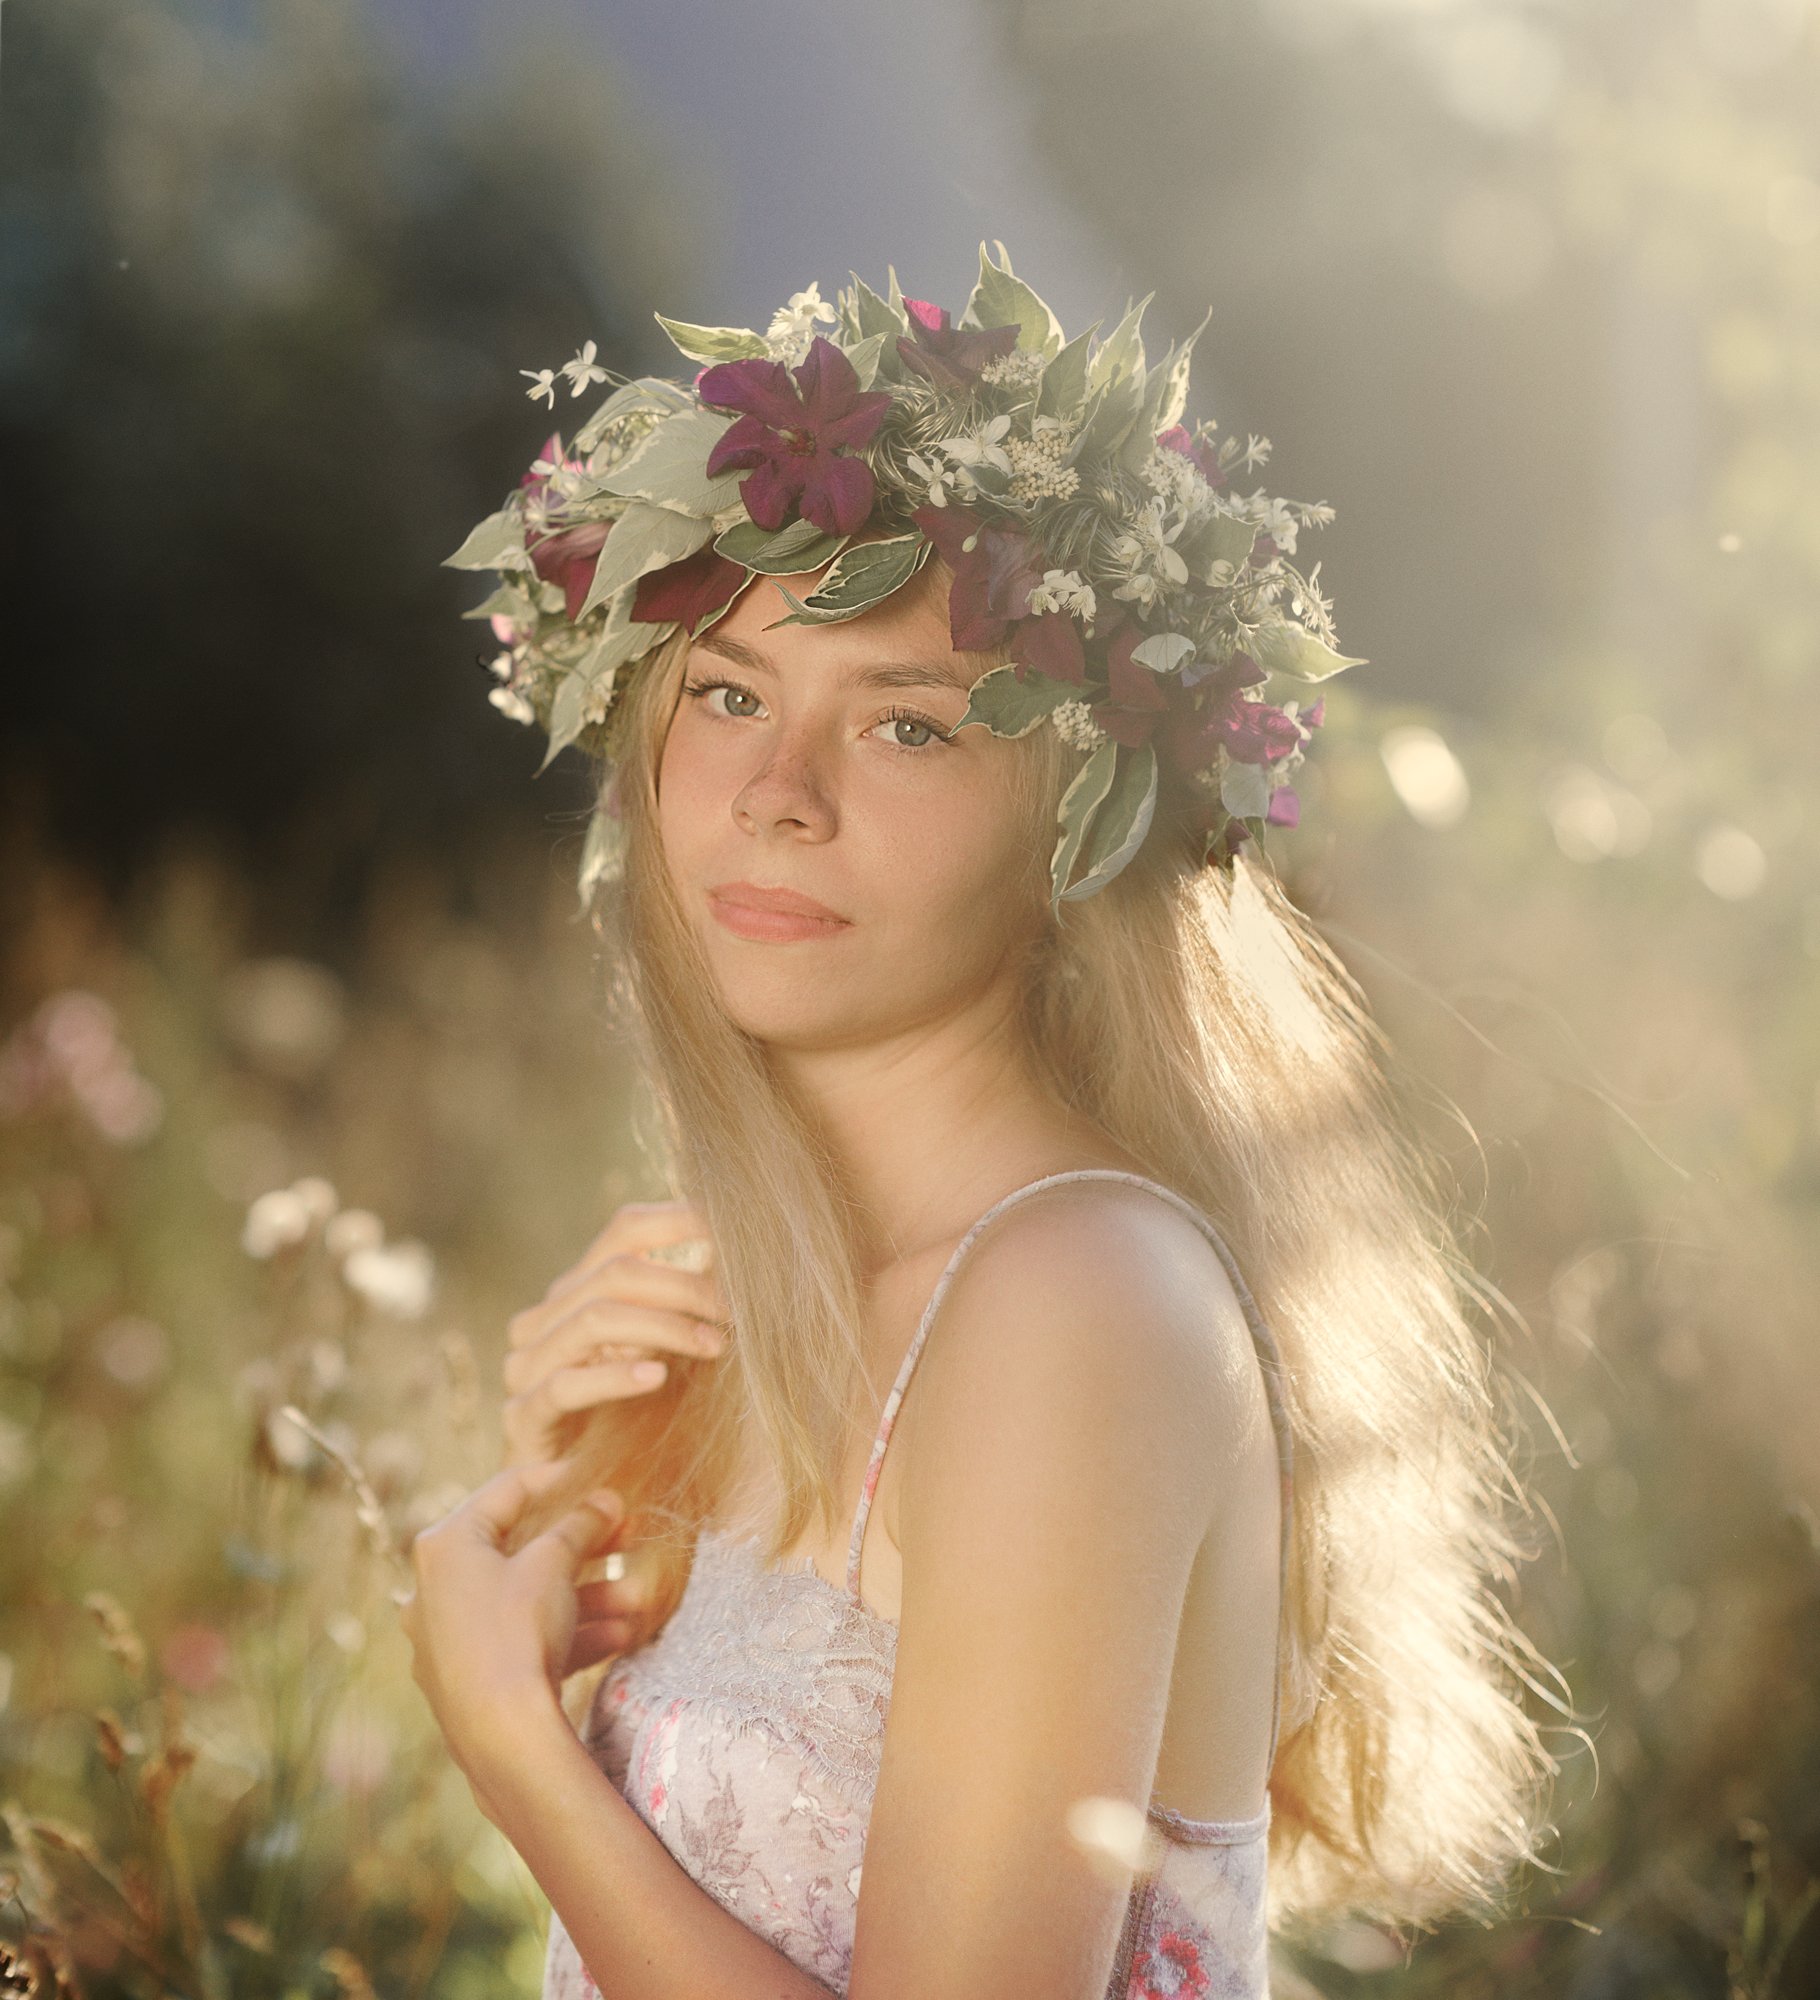 вечерний свет, юная девушка, длинные светлые волосы, природа, лето, венок из цветов, Оксана Ведмеденко